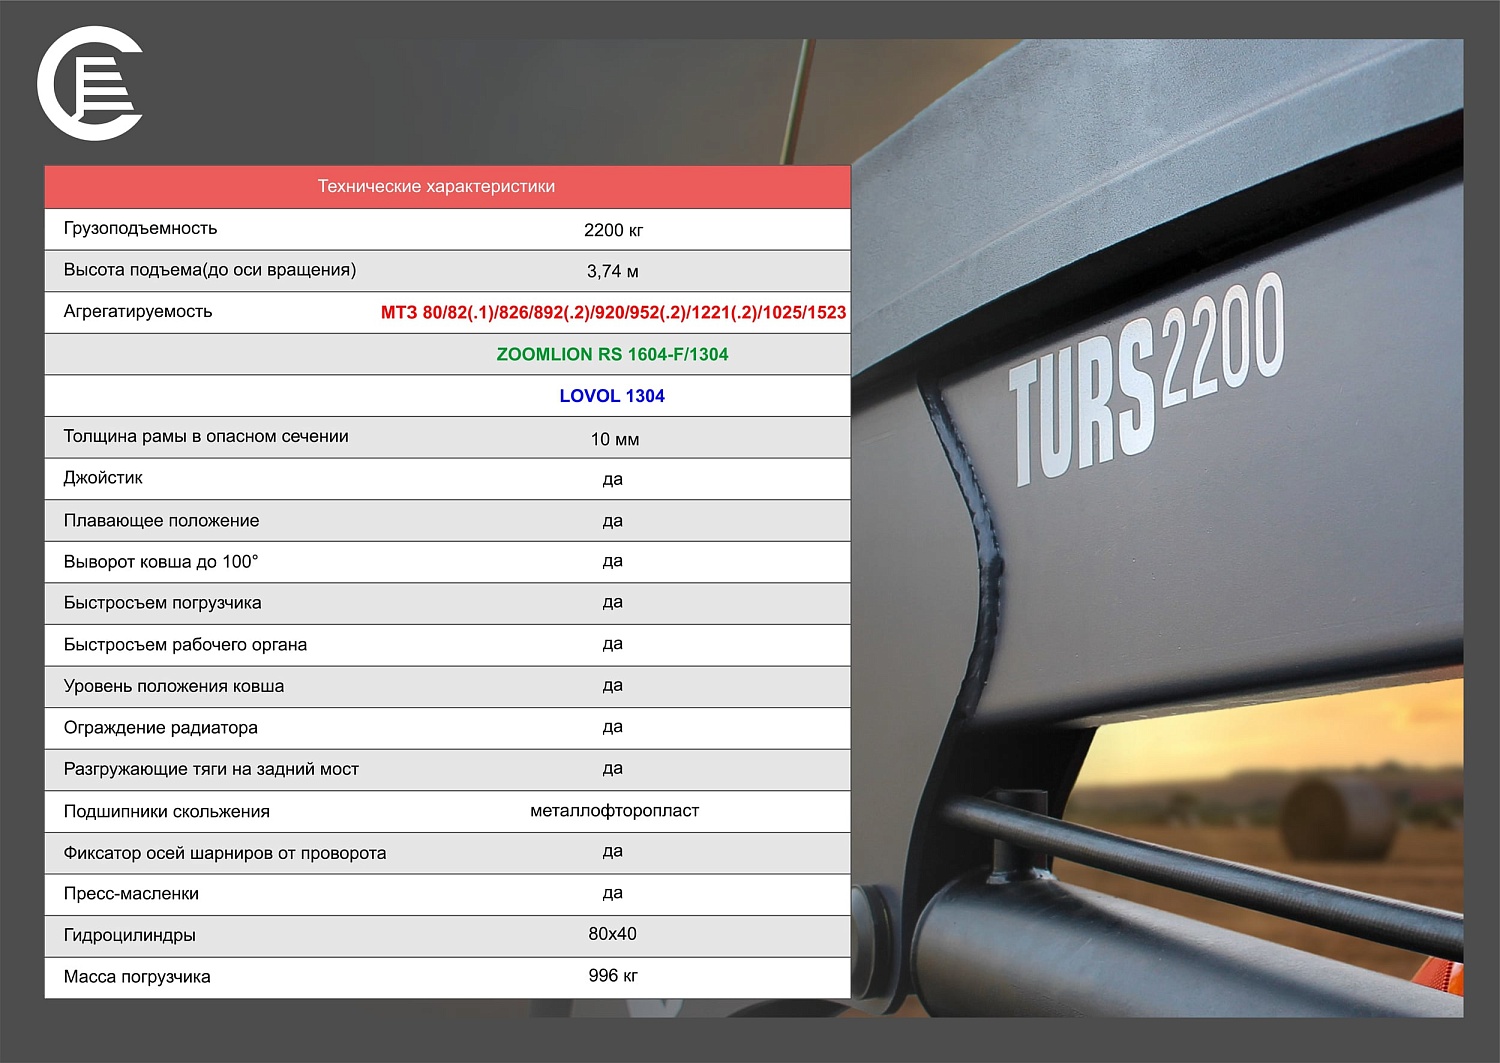 Встречайте новый фронтальный погрузчик TURS-2200